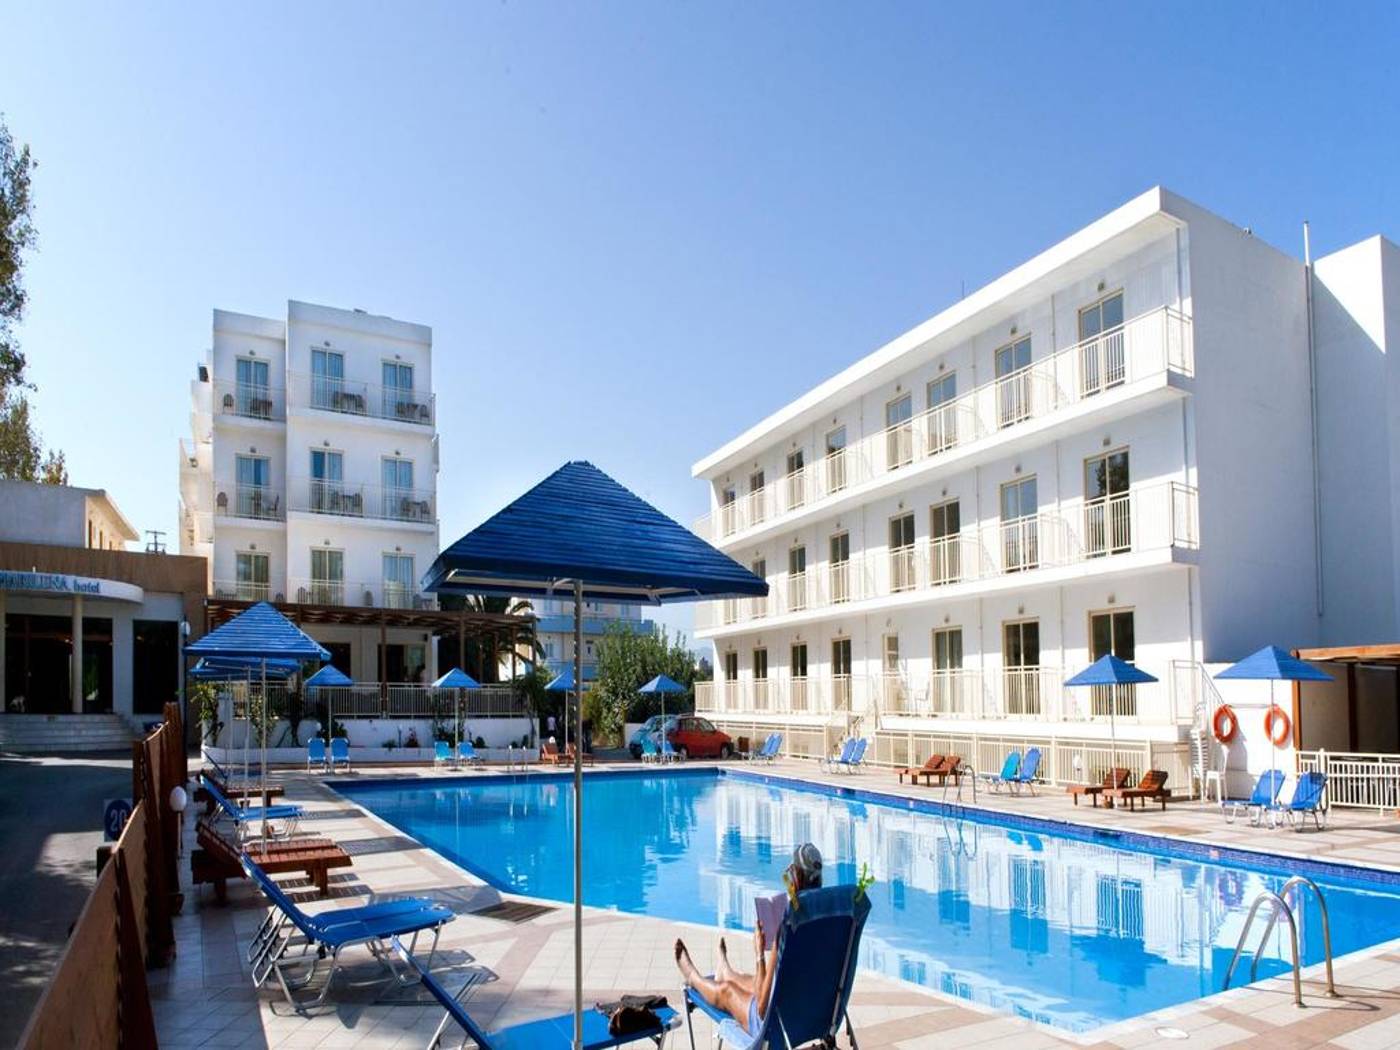 Marilena Hotel in Crete, Greece